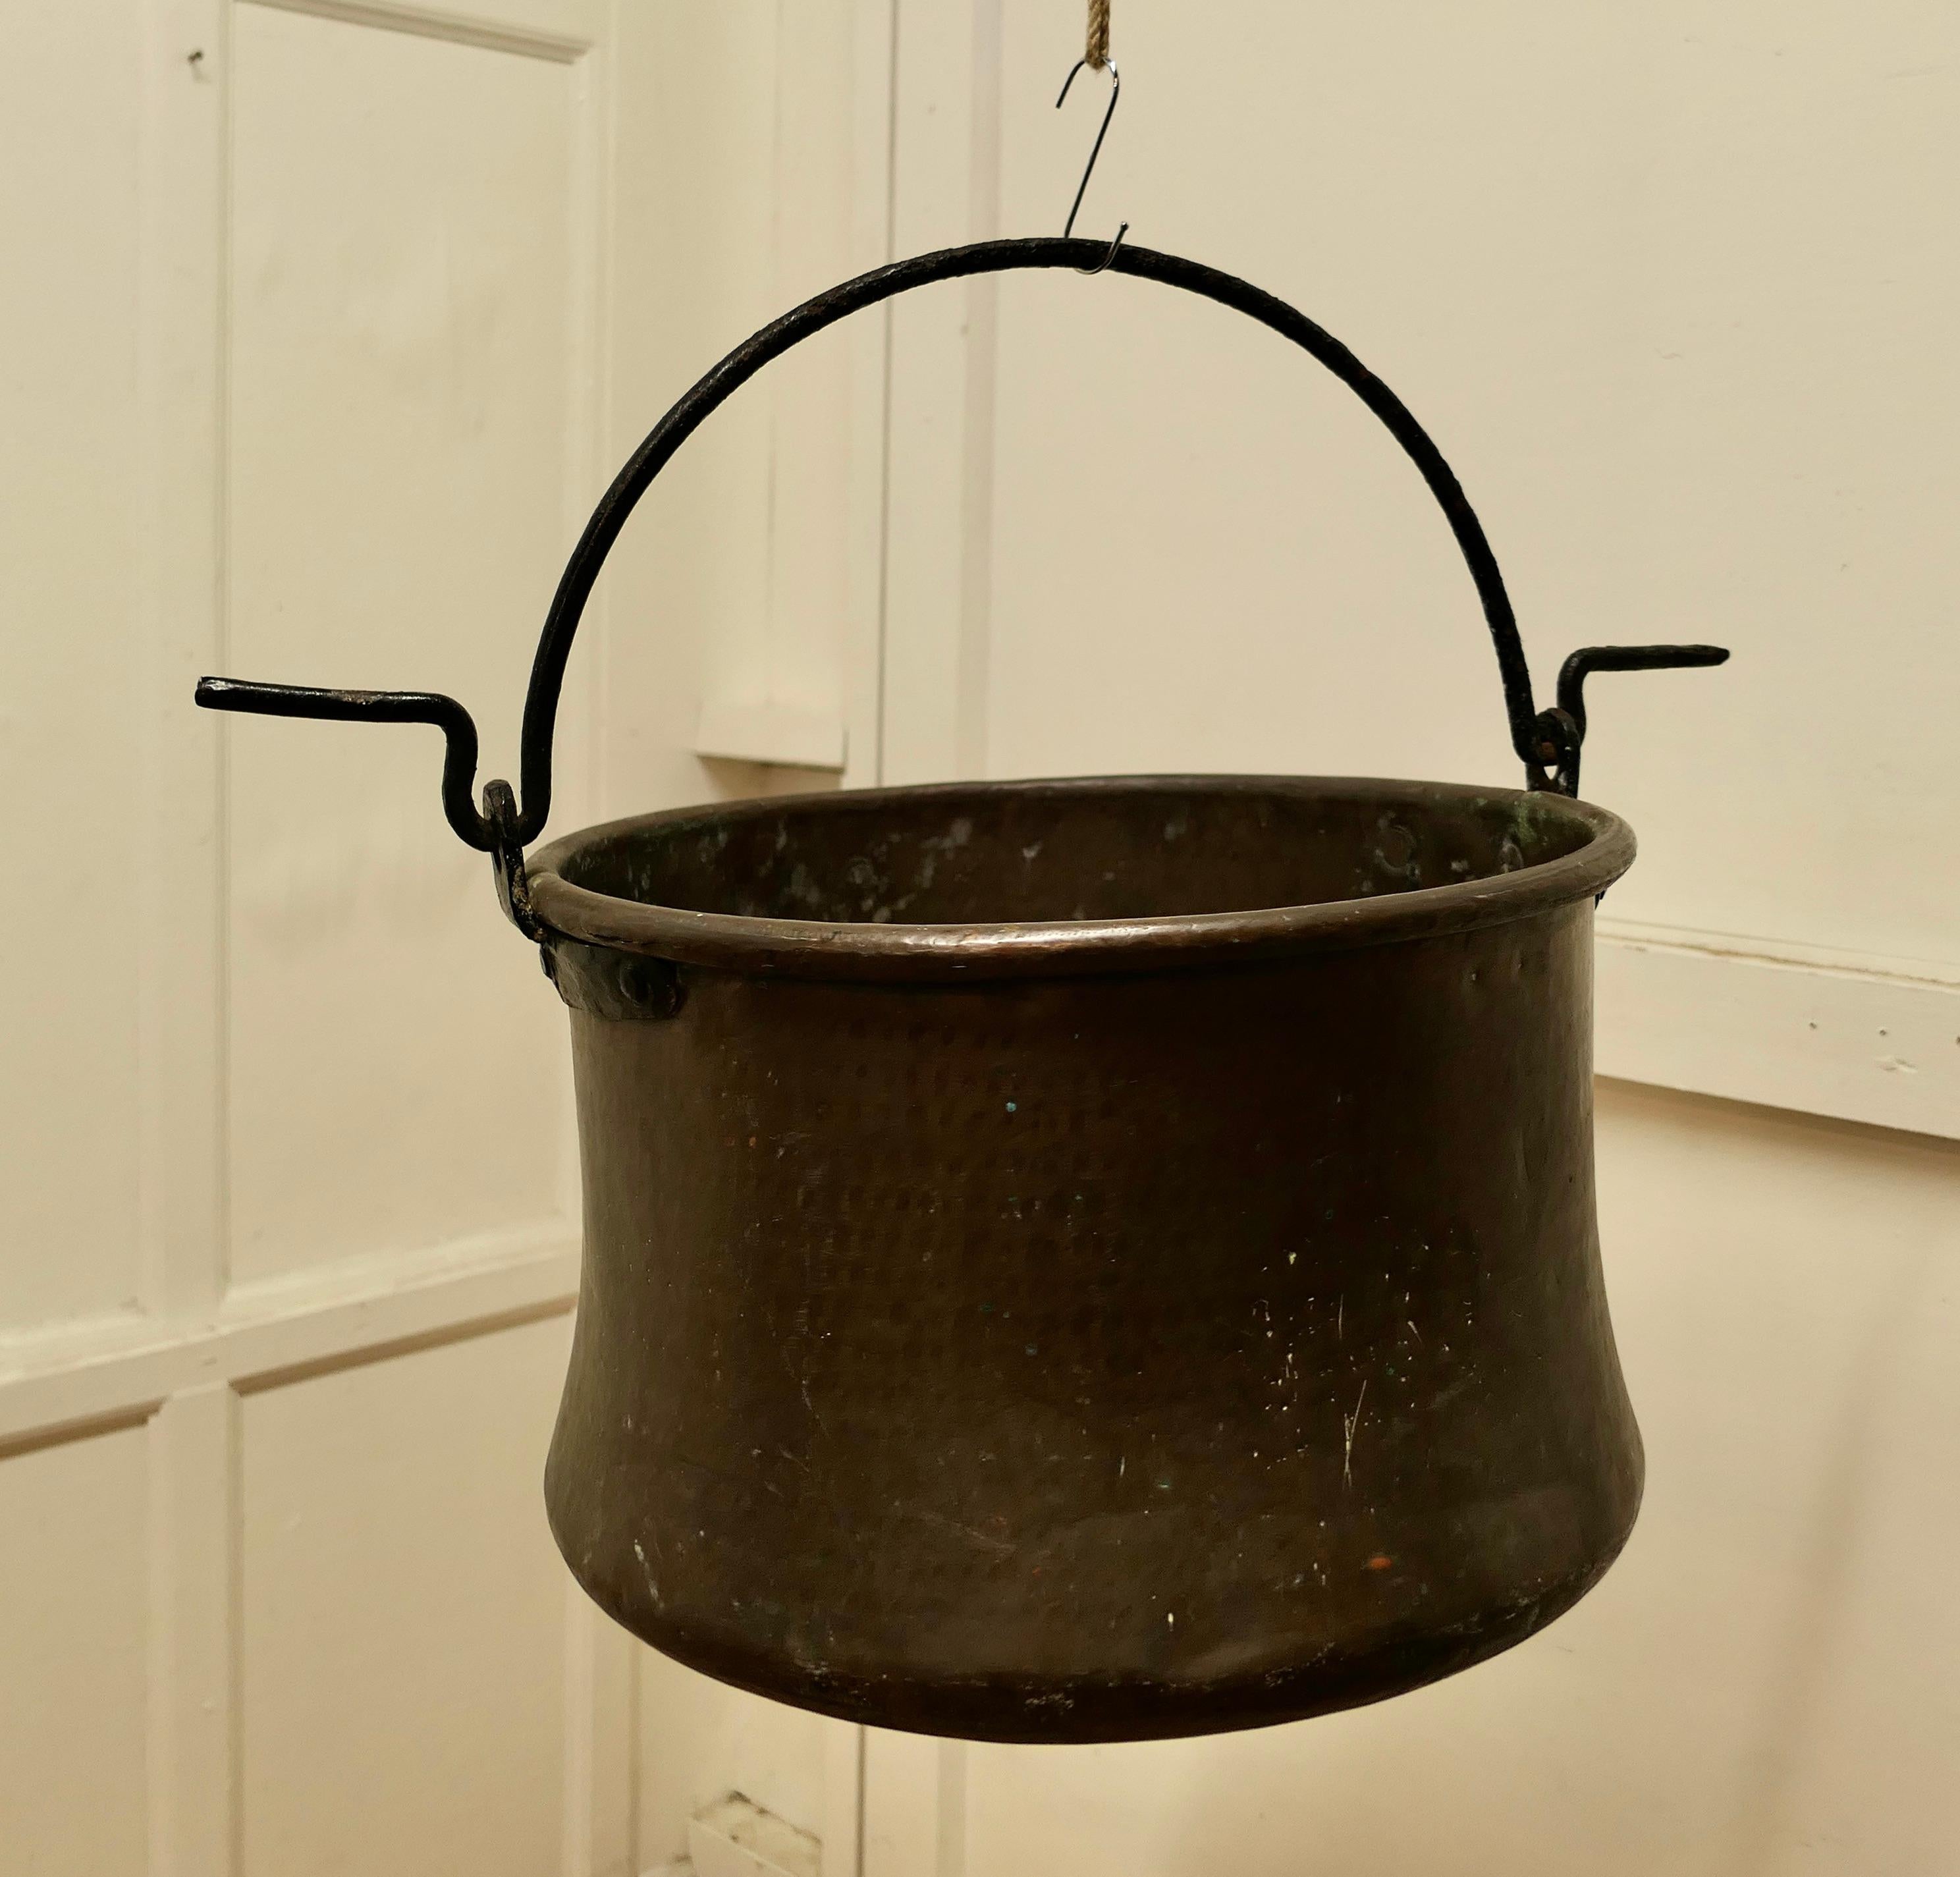 Sehr großer Messingkochtopf aus dem 18. Jahrhundert, Cauldron.

Dies ist ein schöner früher Kochtopf, er wurde in Handarbeit aus Messing gefertigt, der sich am Boden leicht erweitert, um die maximale Hitze des Feuers aufzufangen 
Der Topf hat